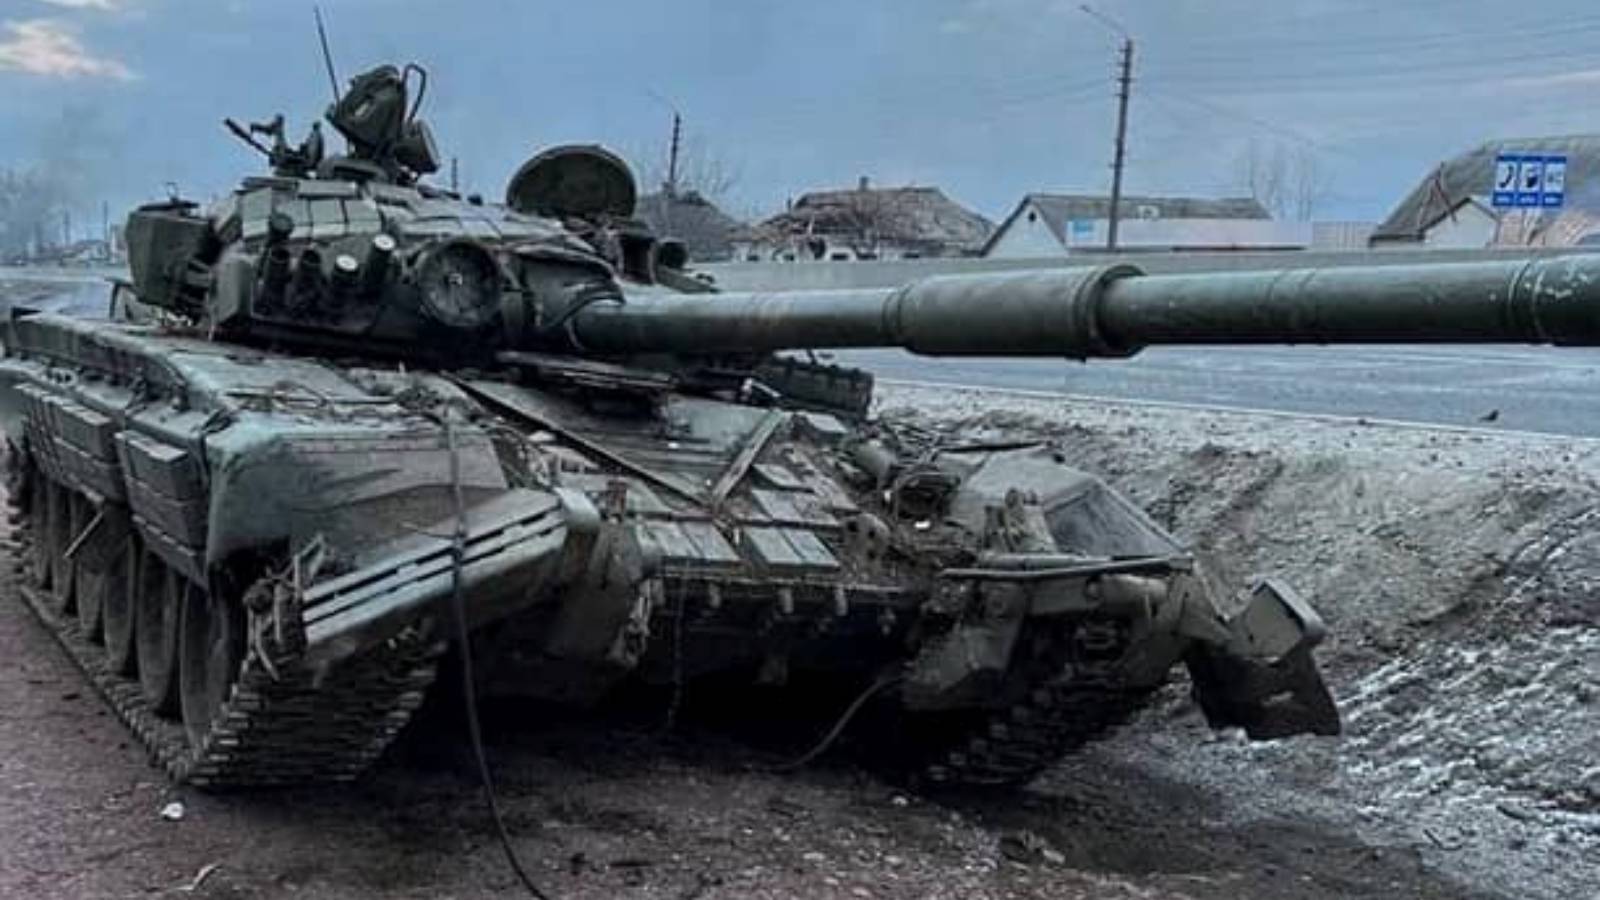 VIDEO Stor konvoj av ryska stridsvagnar attackerad av ukrainskt artilleri